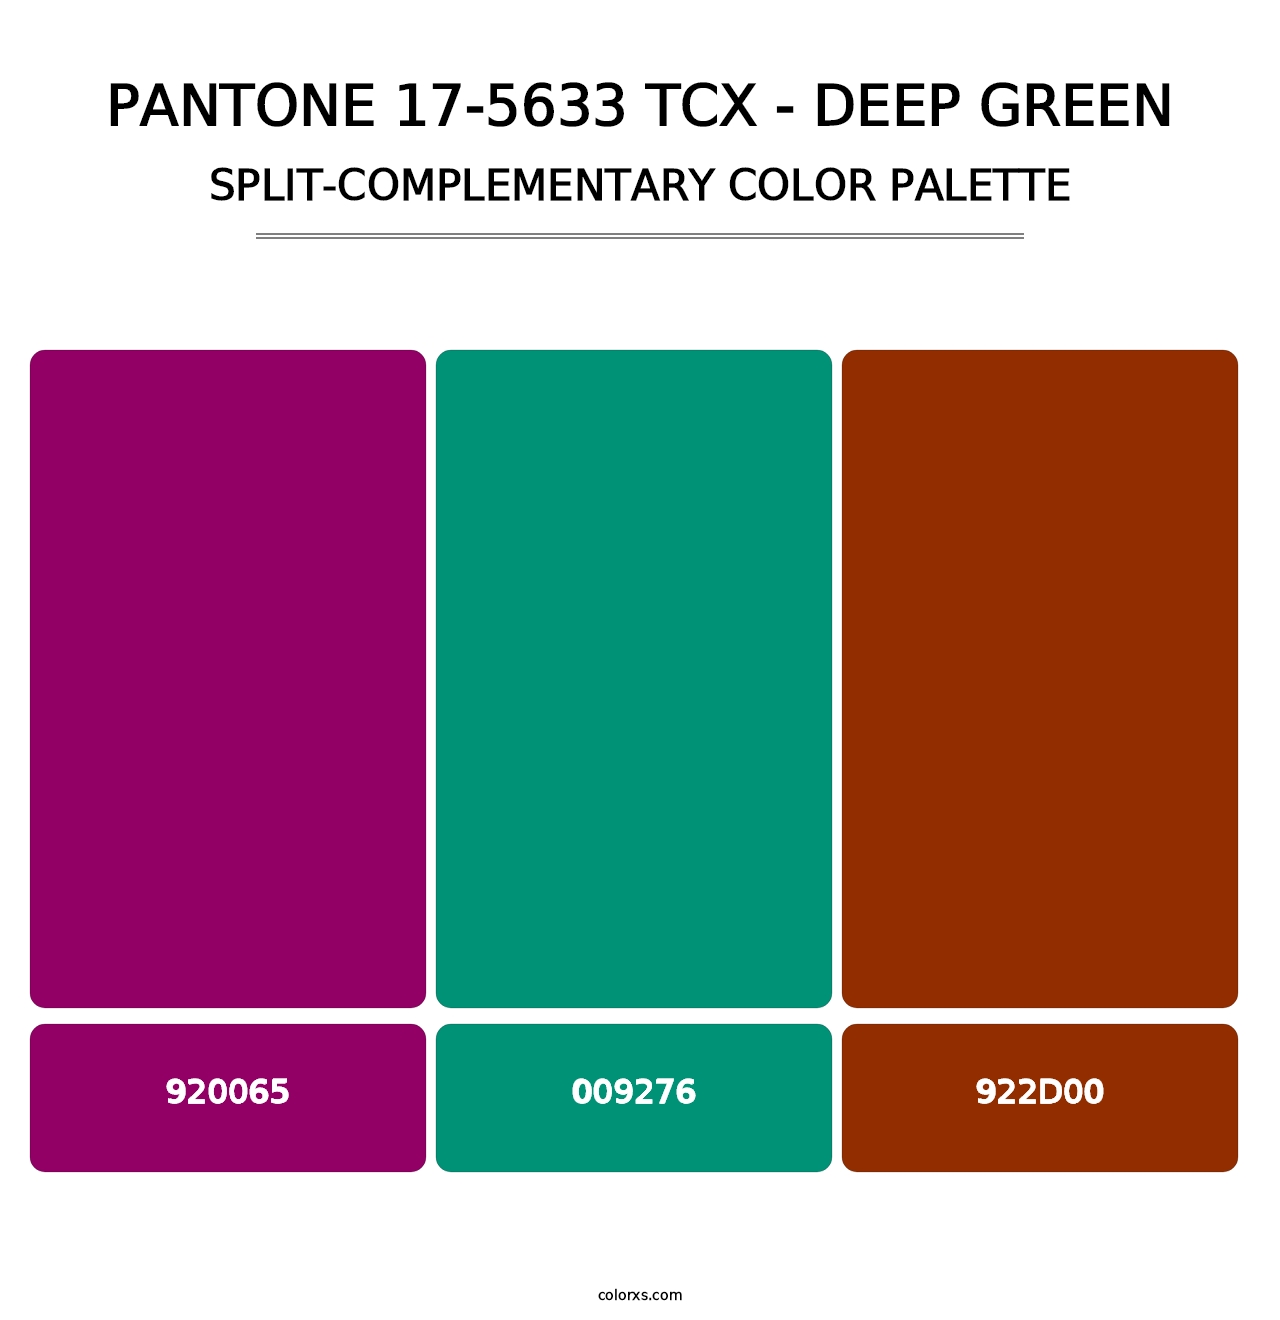 PANTONE 17-5633 TCX - Deep Green - Split-Complementary Color Palette